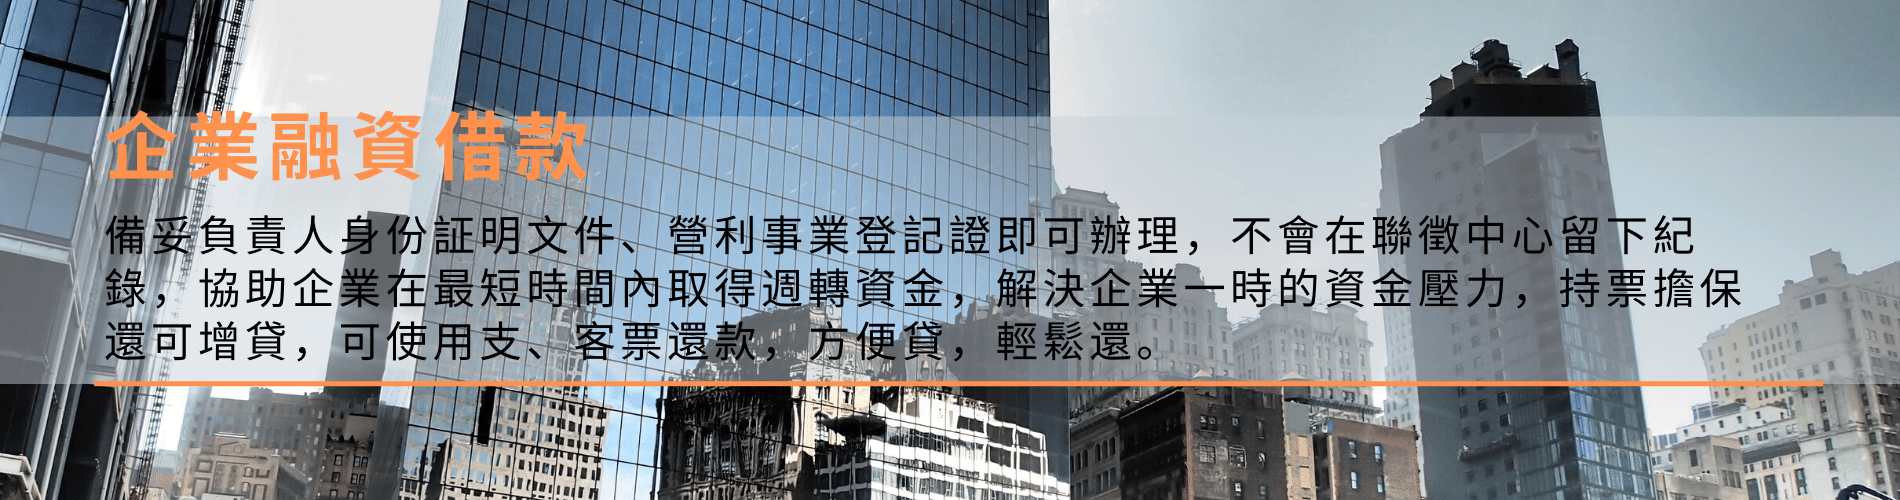 南華企業融資借款